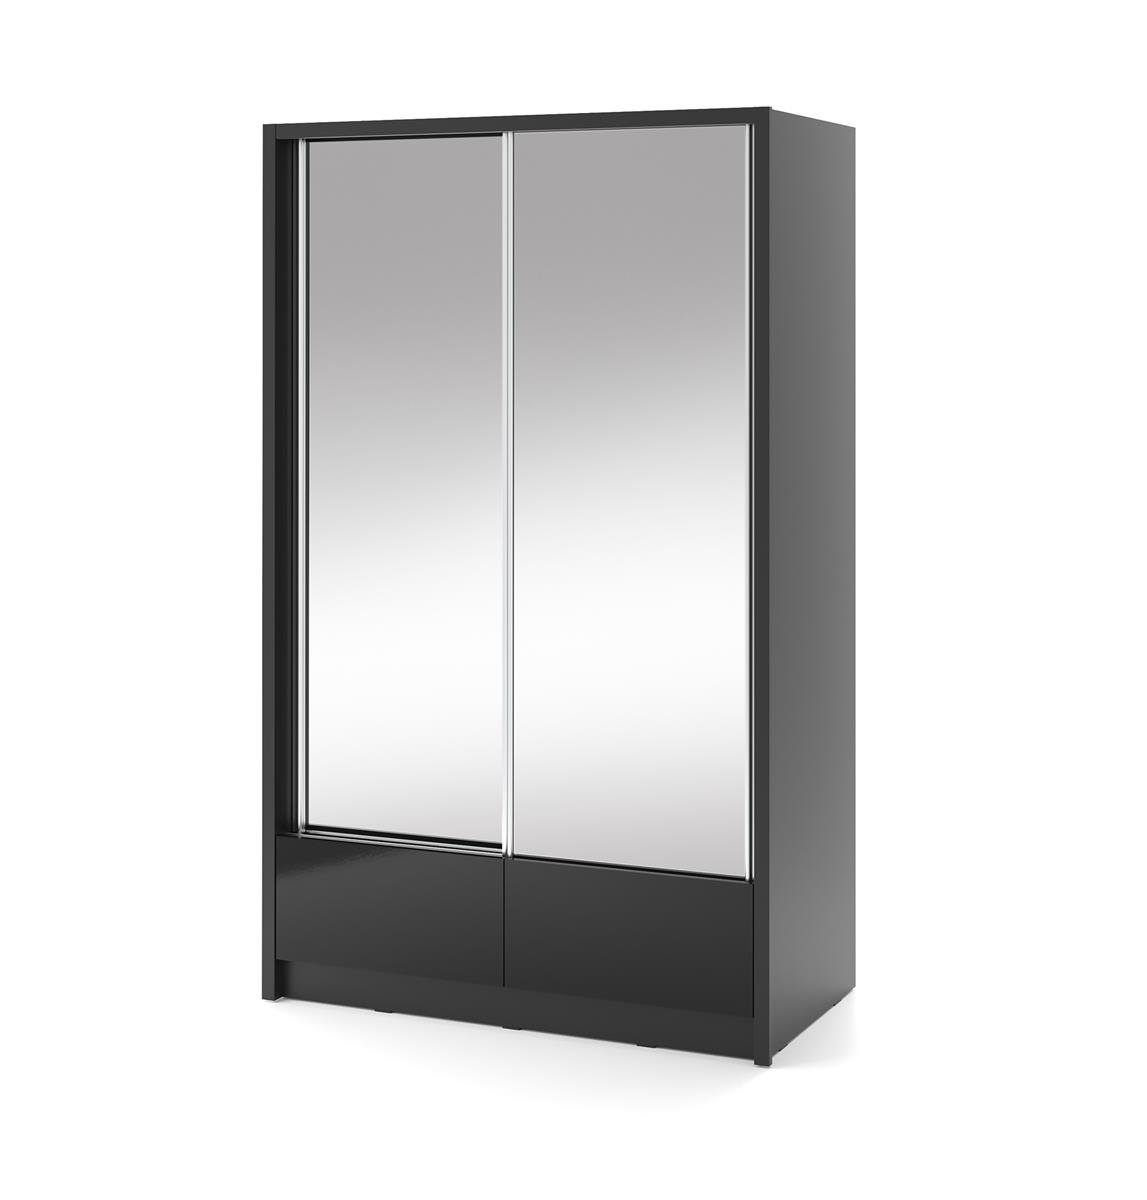 Beautysofa Spiegelschrank Lara II (weißes oder schwarzes Kleiderschrank, Garderobe) mit 2x Spiegelnd, Schiebtüren Schrank für Wohnzimmer